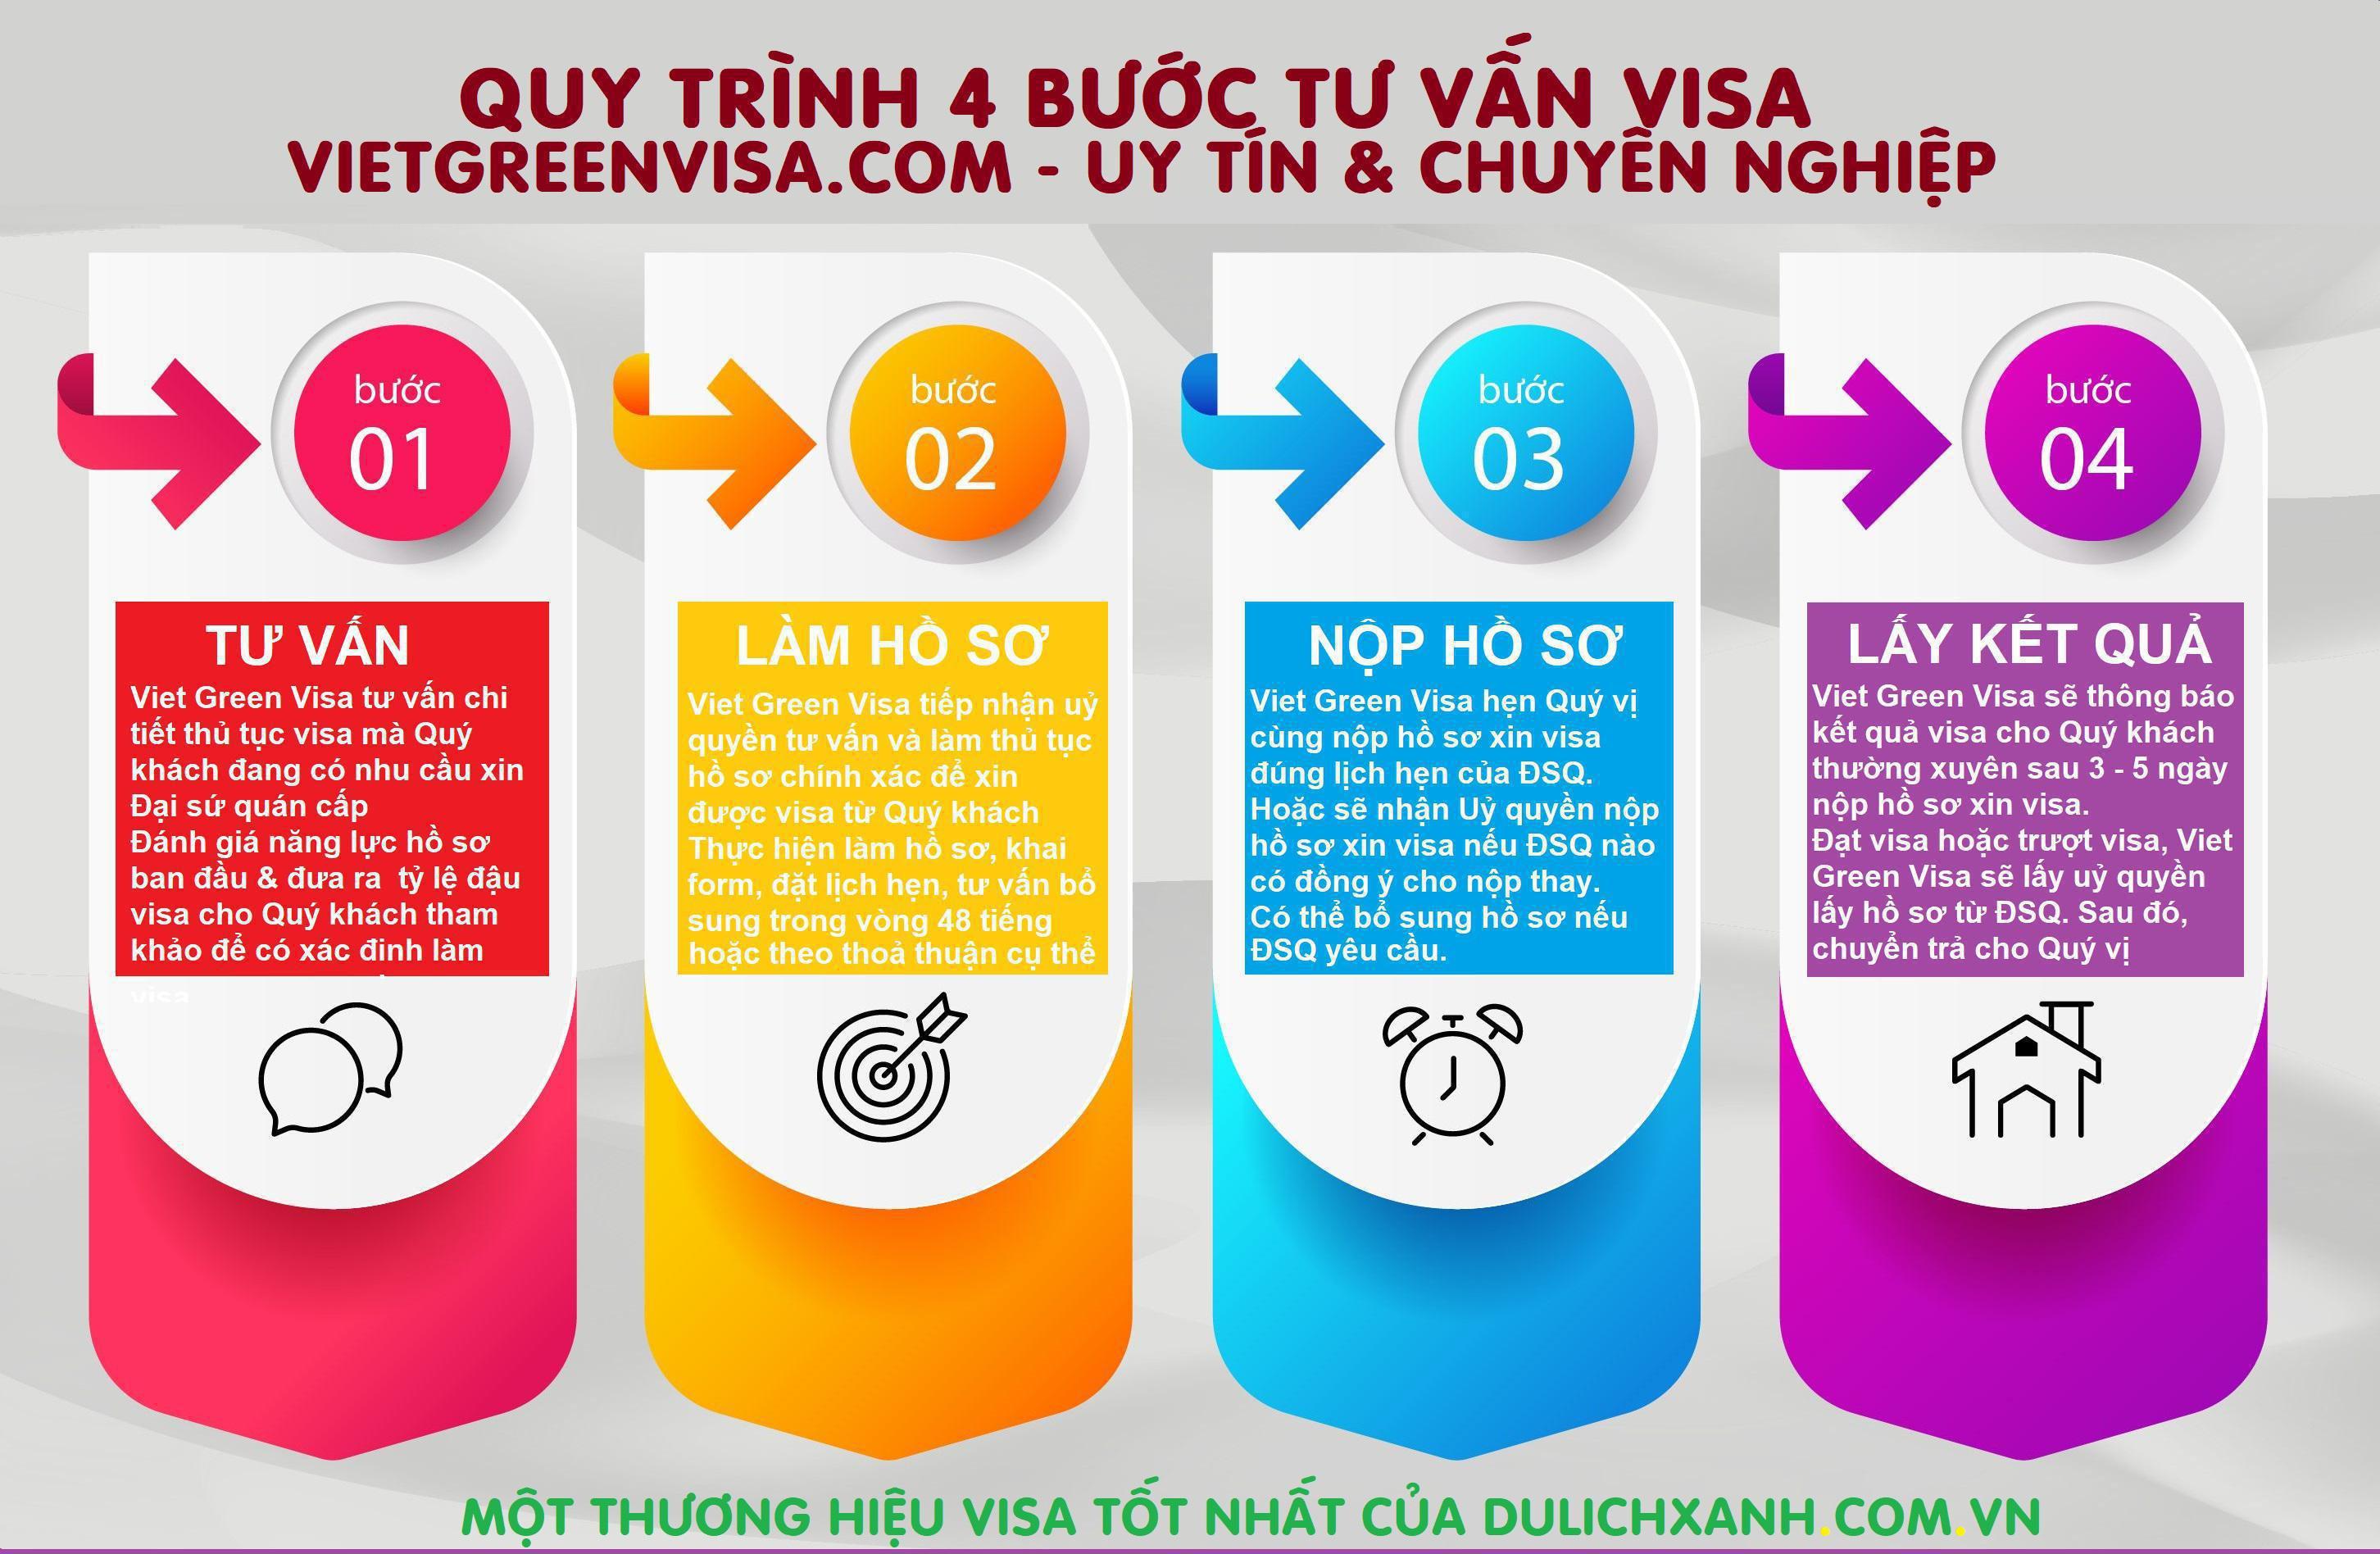 Dịch vụ xin Visa Bahamas công tác uy tín, giá rẻ, nhanh gọn